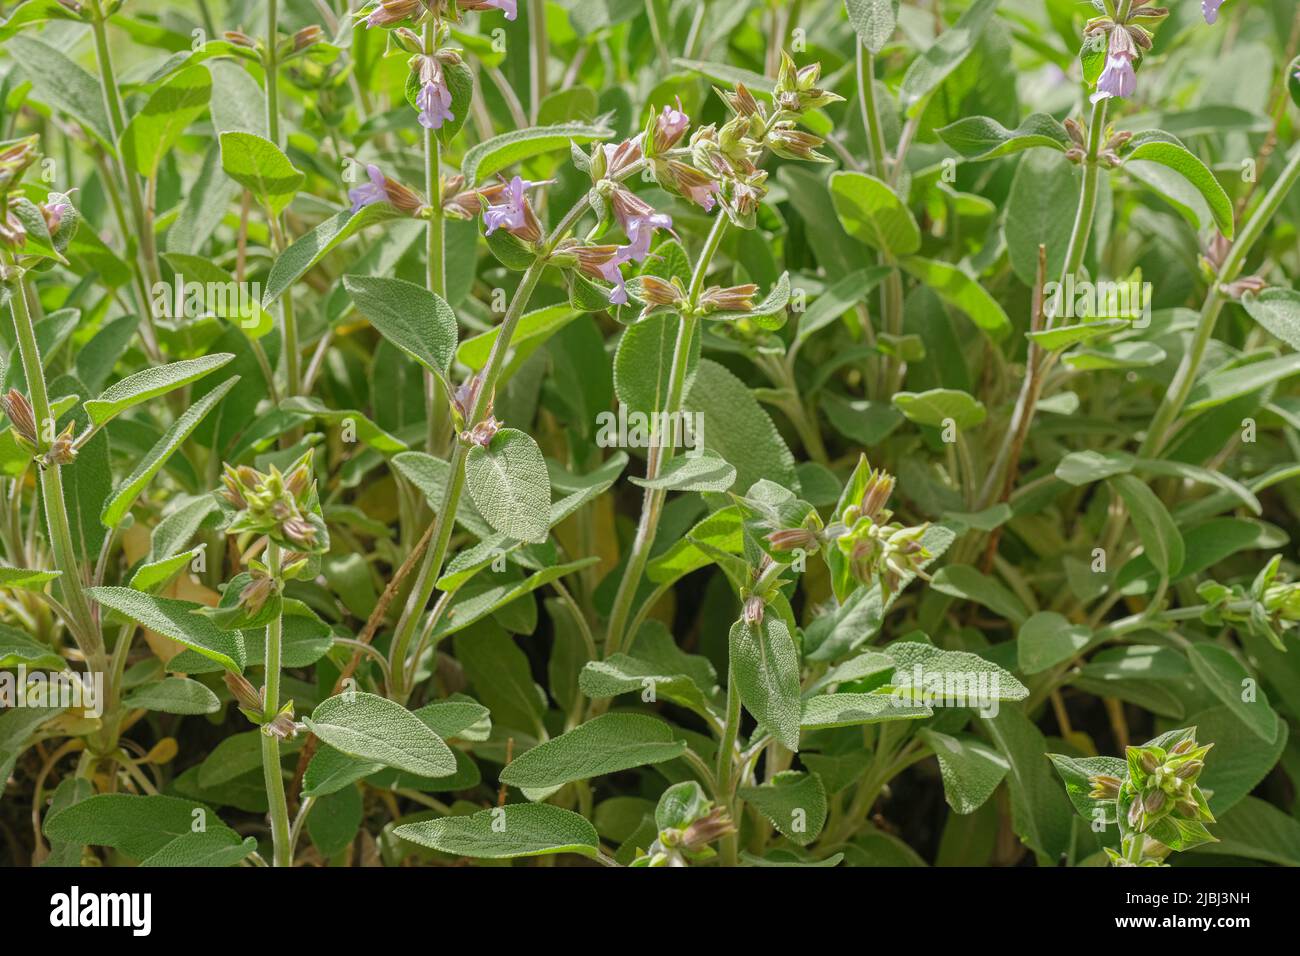 Salvia salvaje officinalis, hierbas medicinales y culinarias. Hierbas aromáticas officinalis perennes Foto de stock